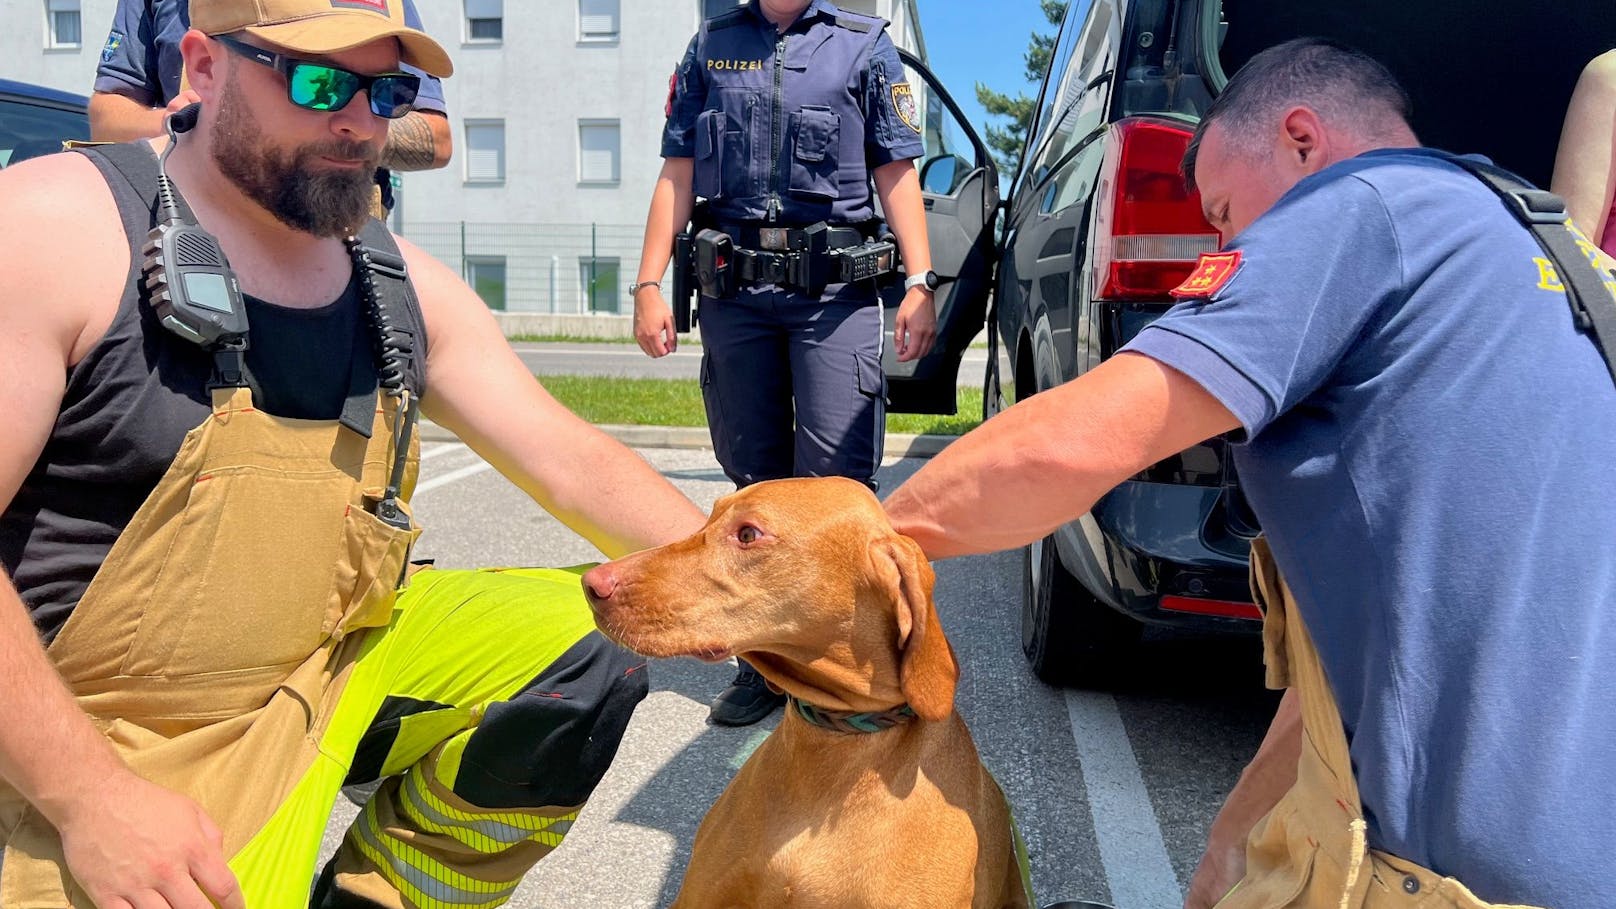 Polizei und Feuerwehr befreien Hund aus Auto